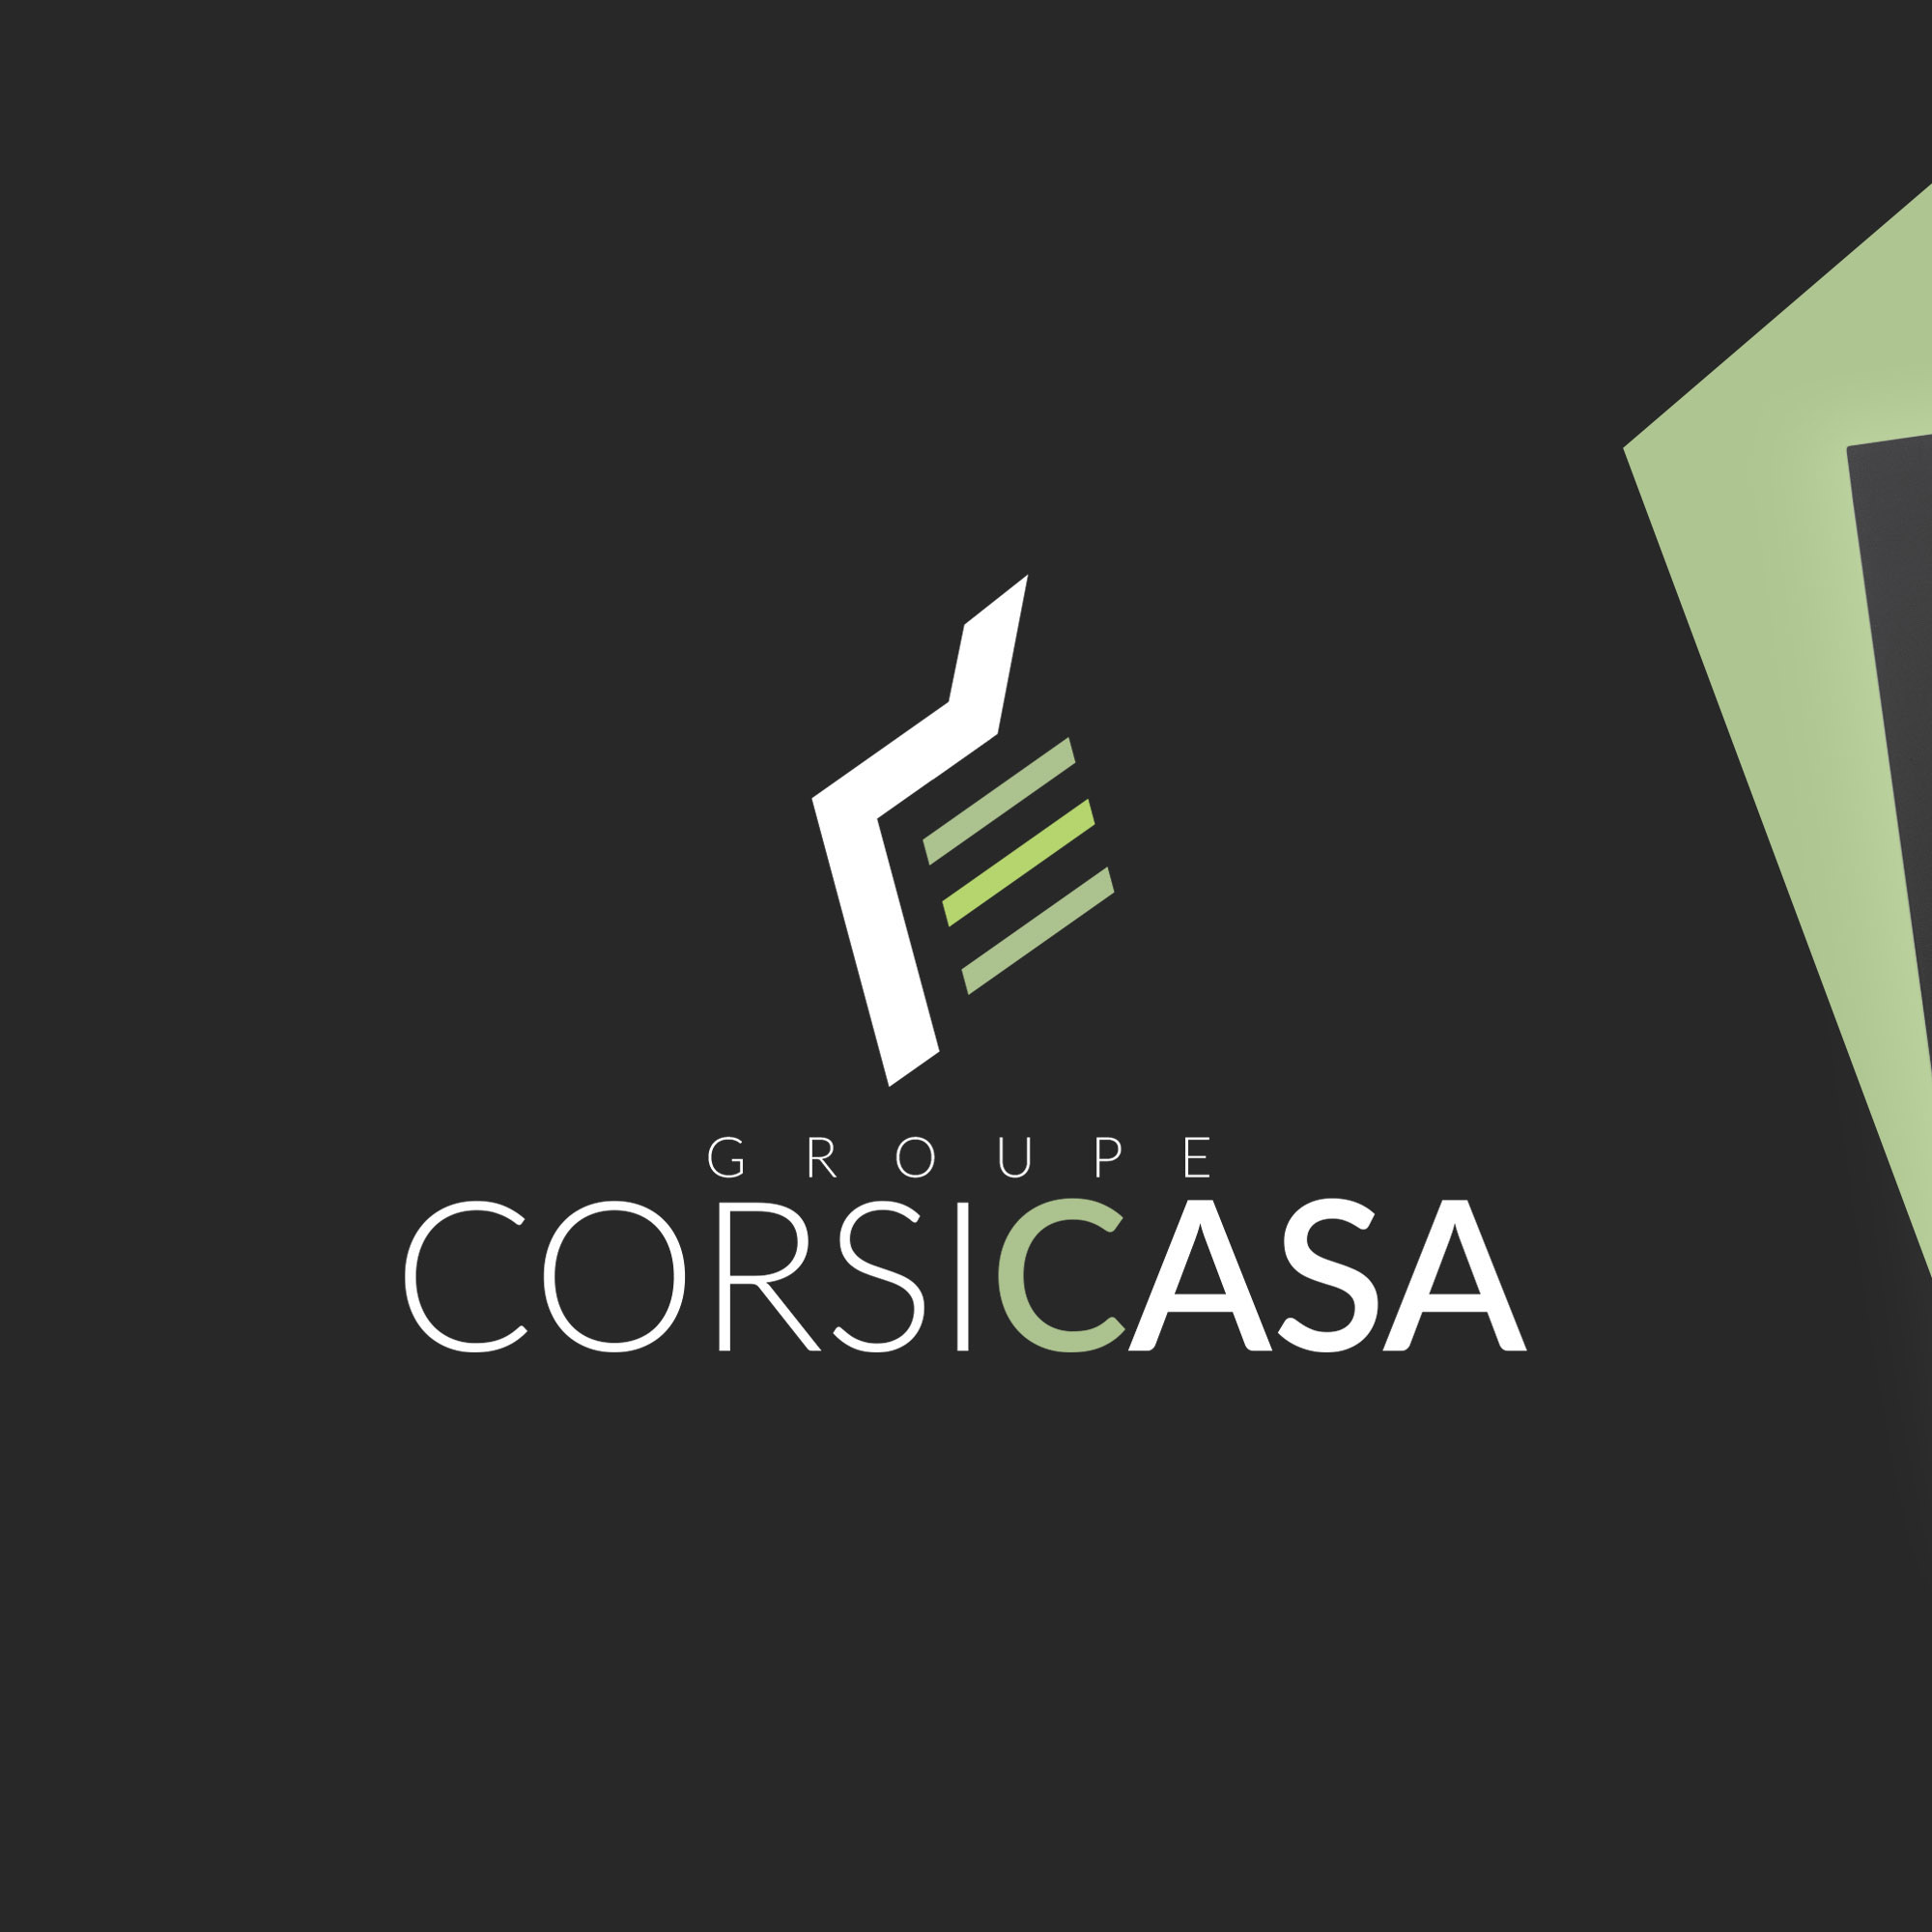 Corsica Casa